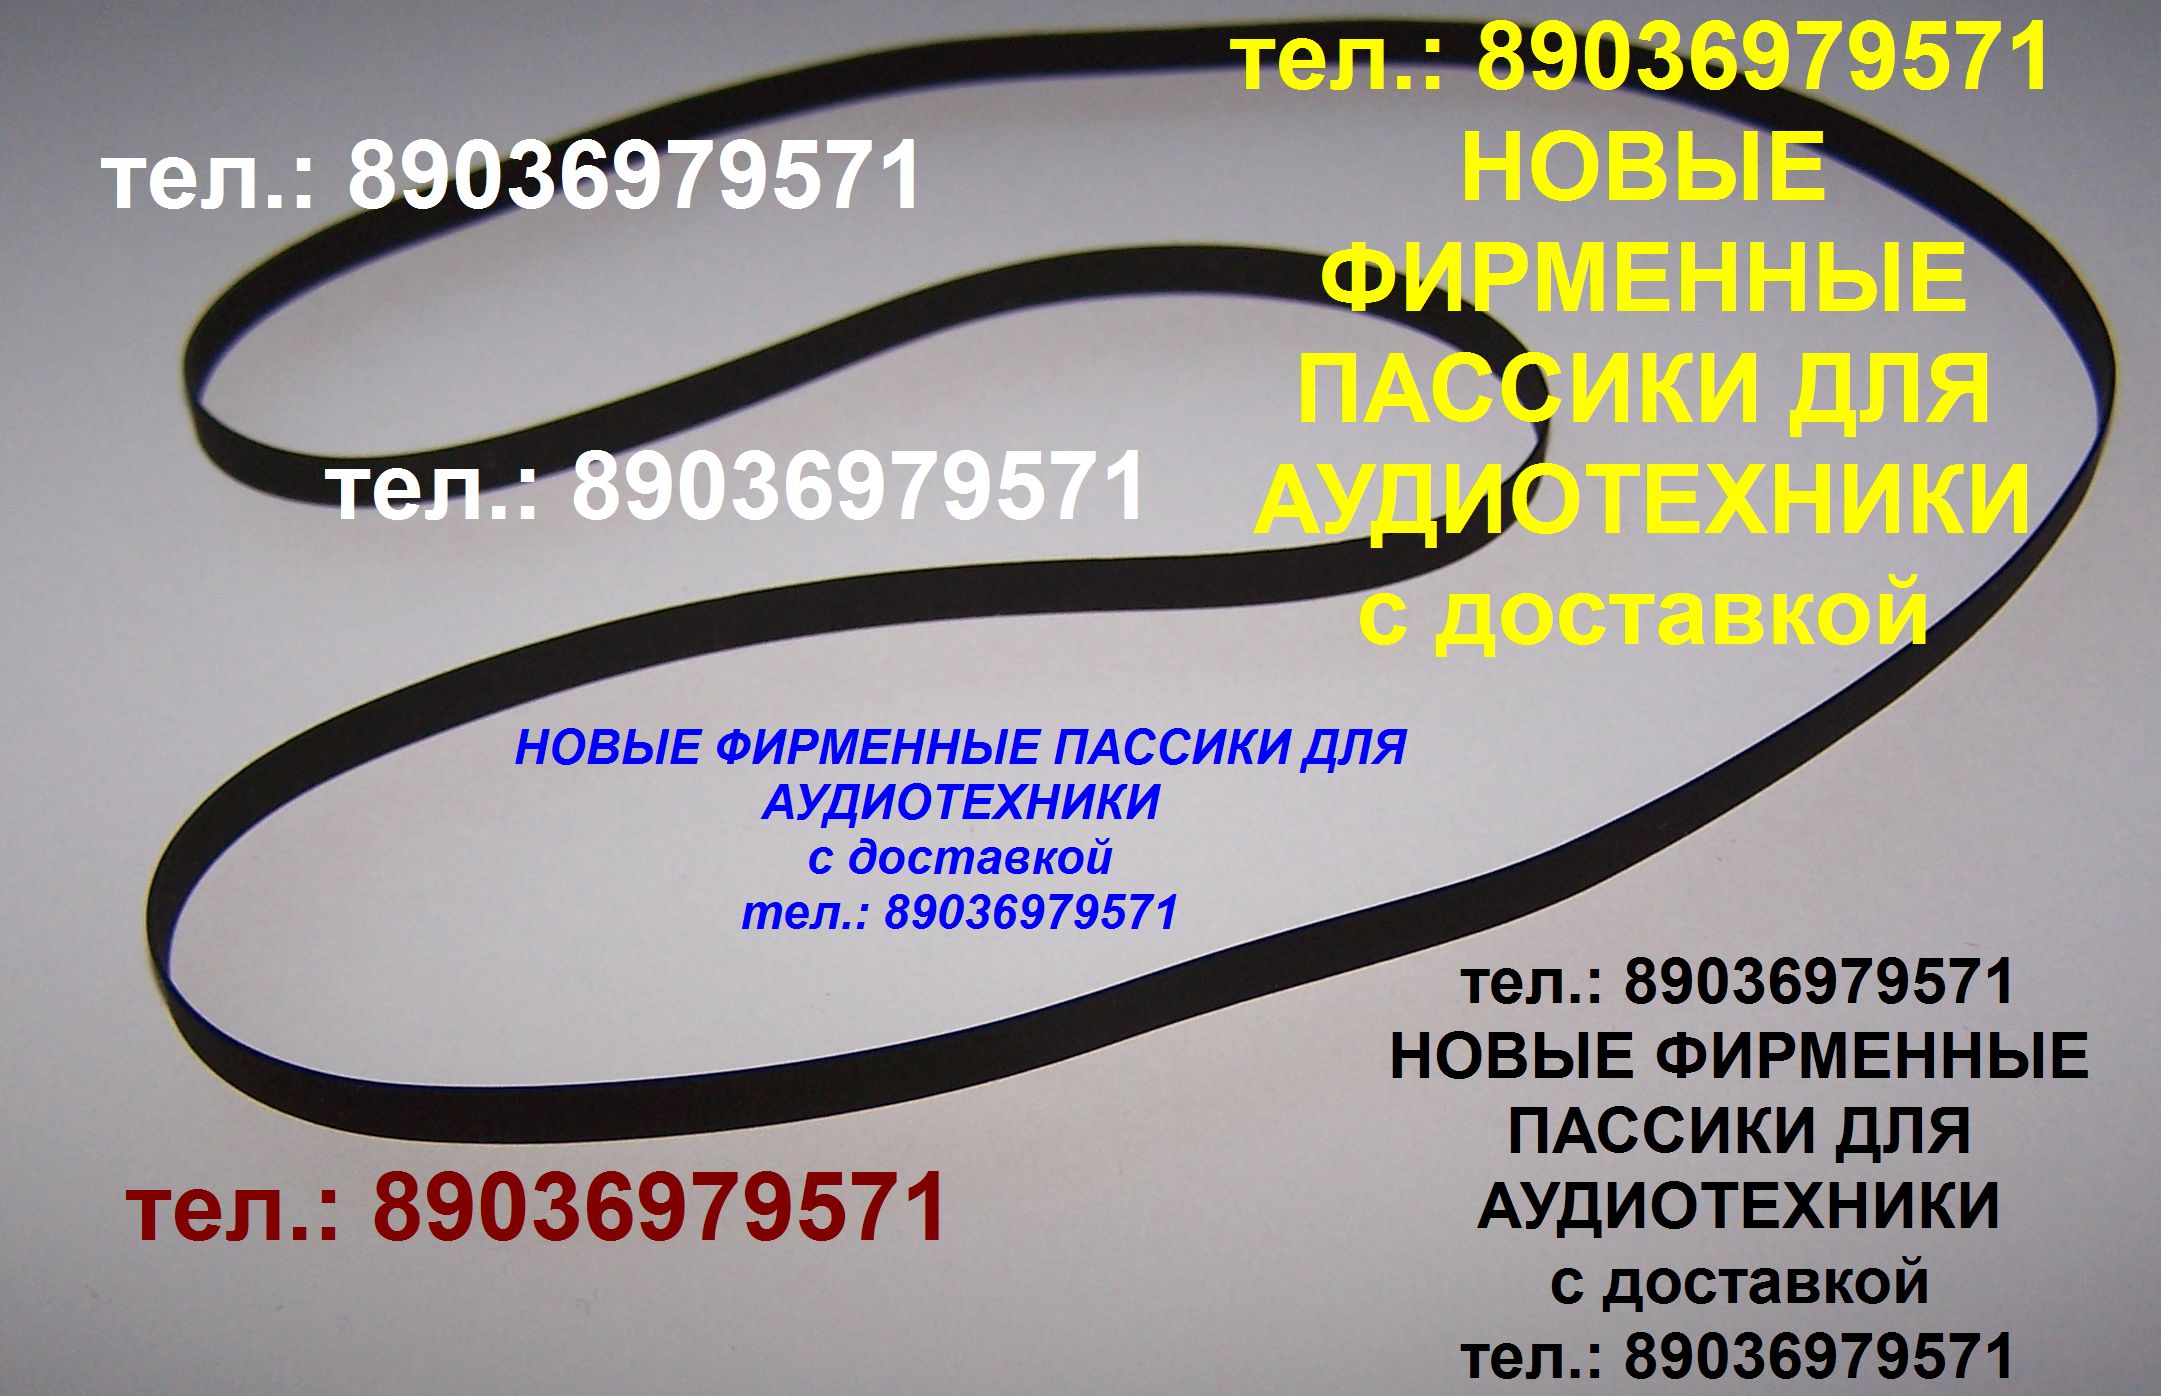 Пассик 295 мм. 29,5 см. пасик пассики ремень для аудиотехники в городе Москва, фото 1, телефон продавца: +7 (903) 697-95-71